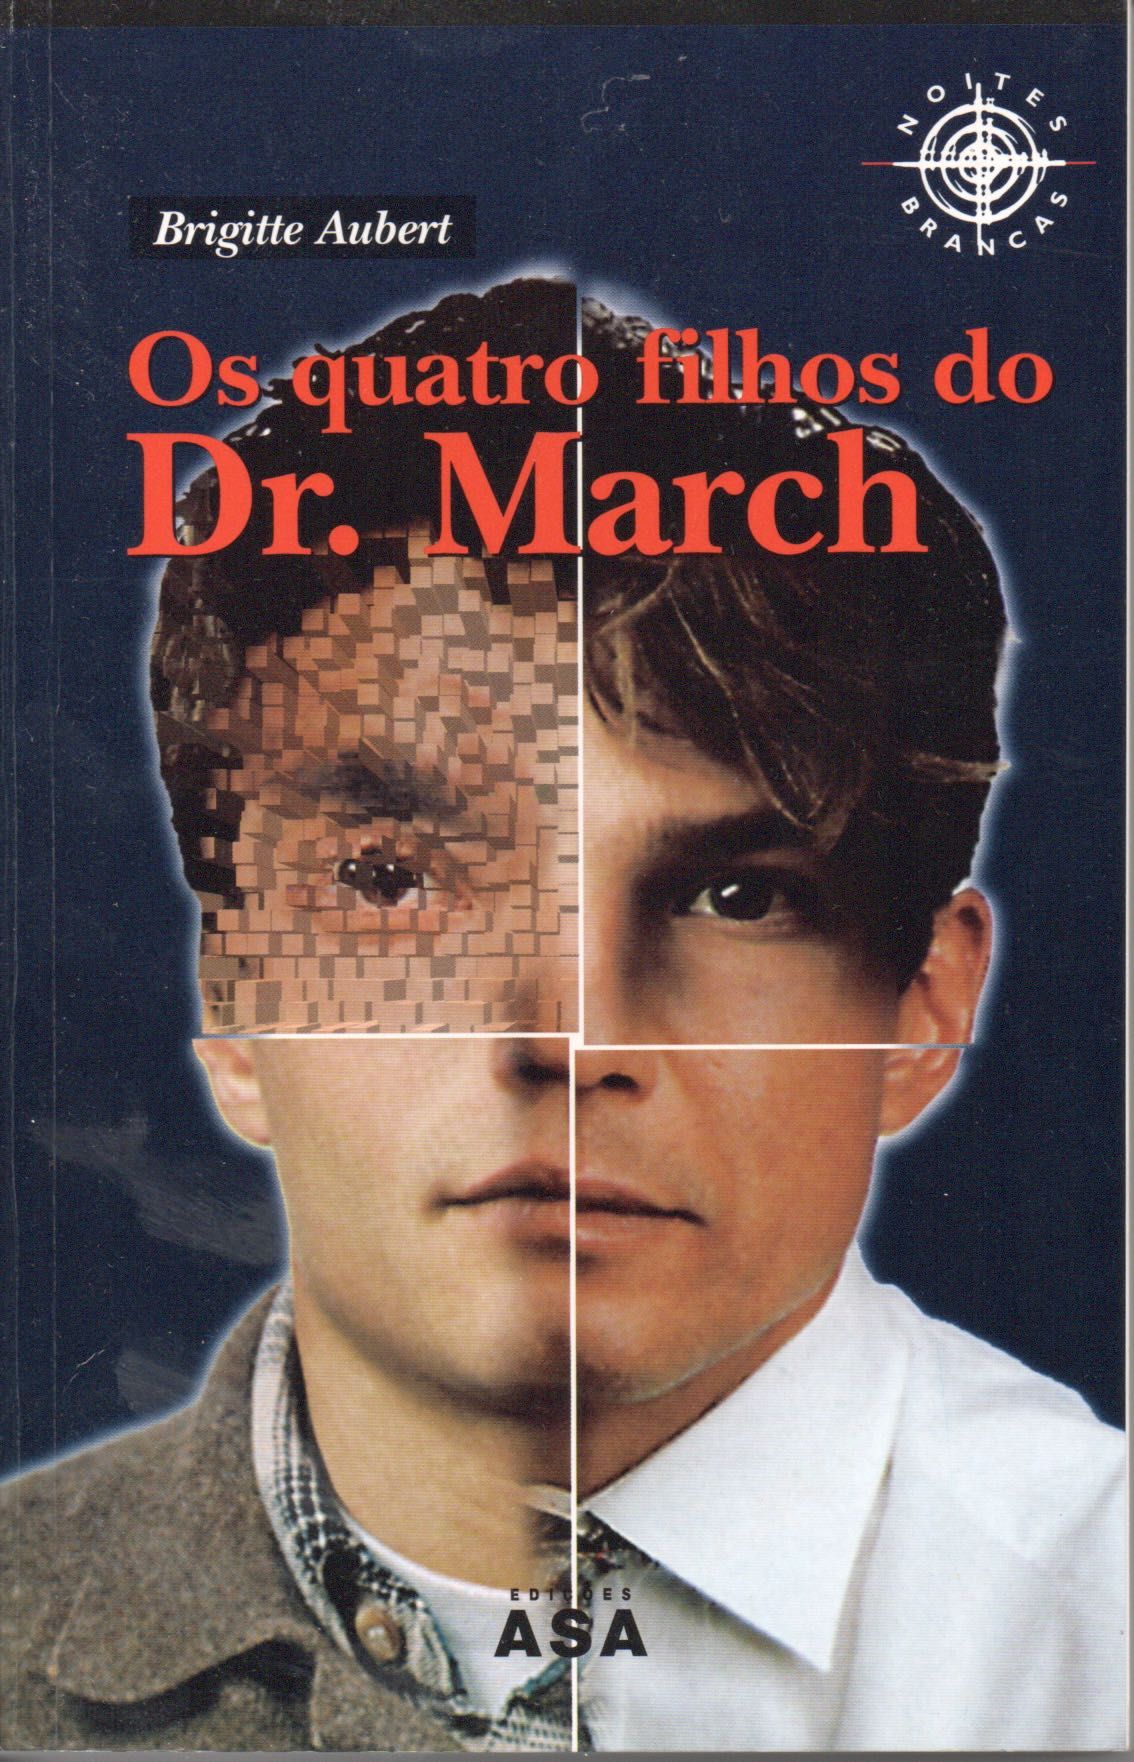 "Os quatro filhos do Dr. March" de Brigitte Aubert